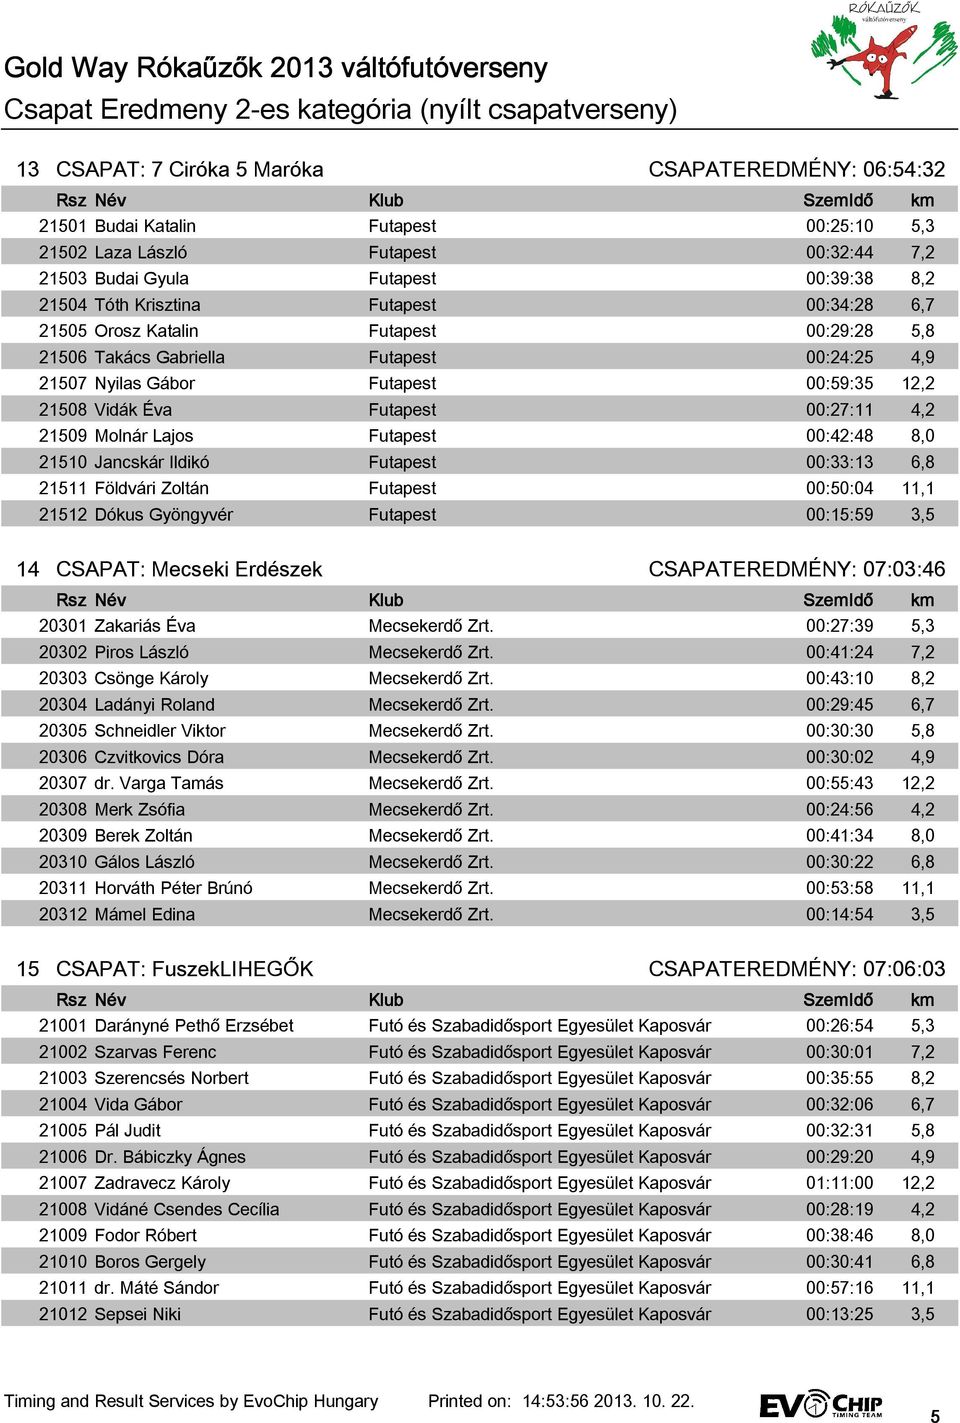 Gold Way Rókaűzők 2013 váltófutóverseny Csapat Eredmeny 0-ás kategória  (Középiskolai csapatok) - PDF Ingyenes letöltés